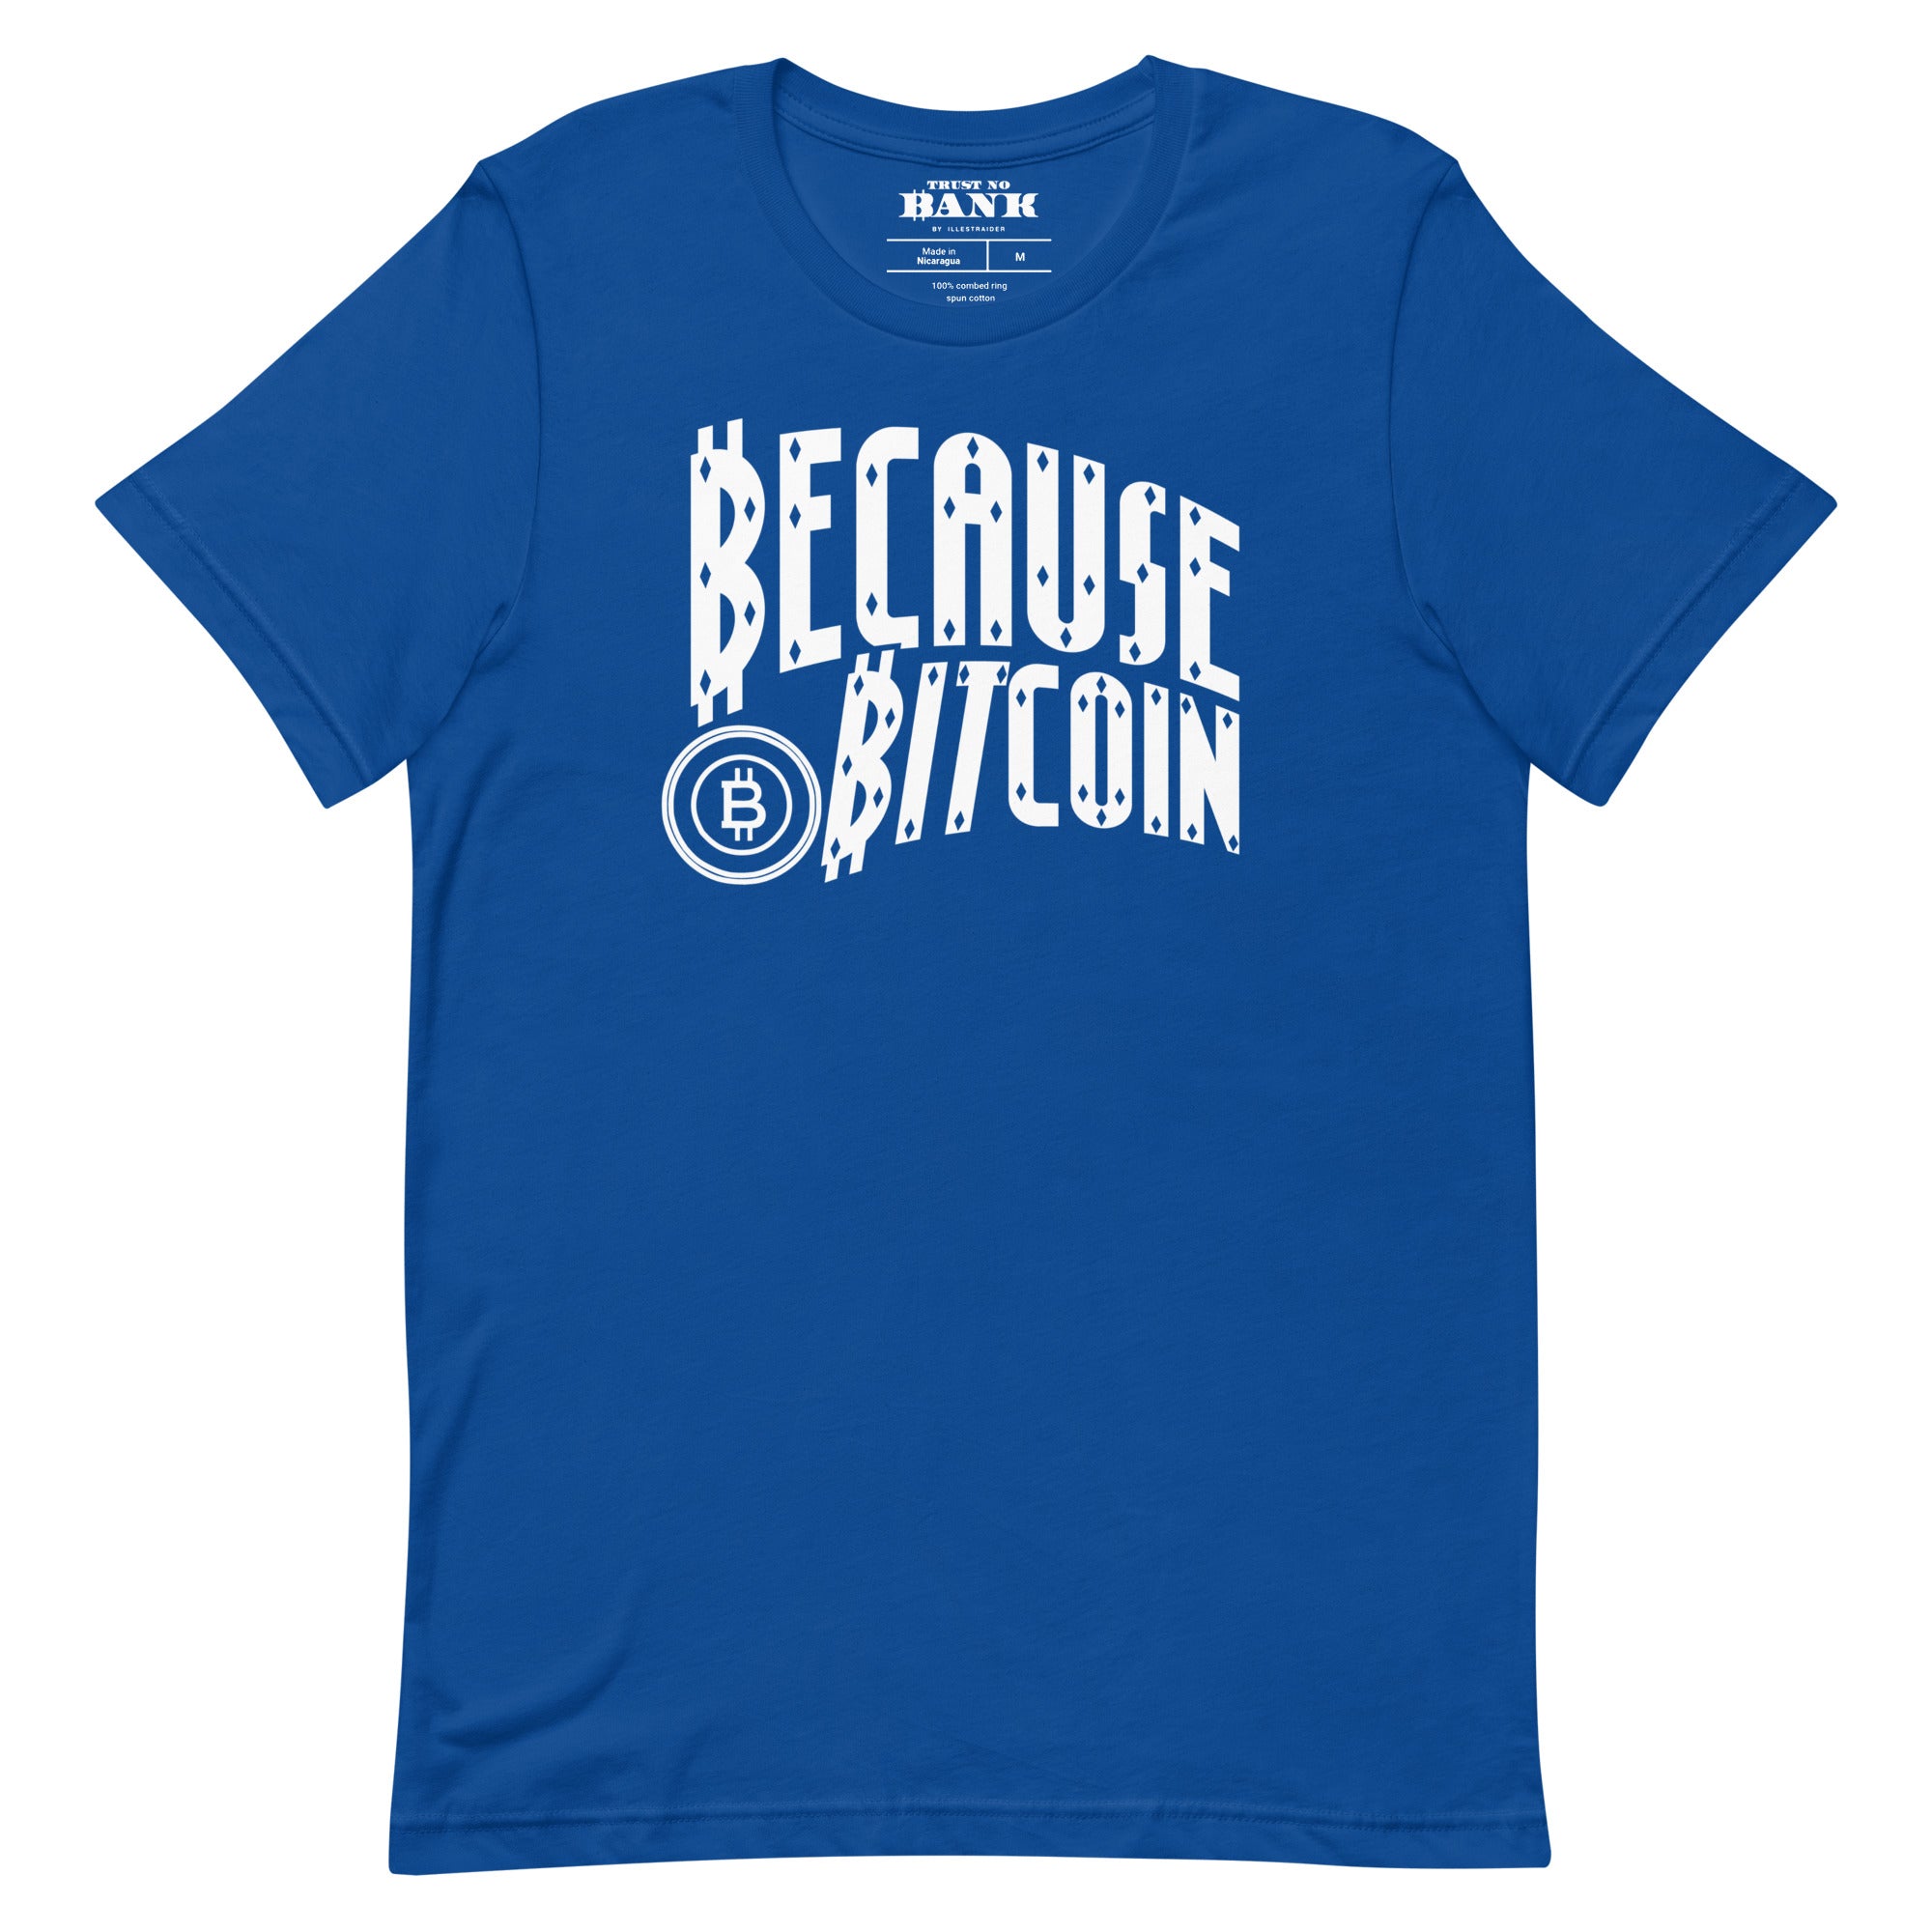 Because Bitcoin T-Shirt